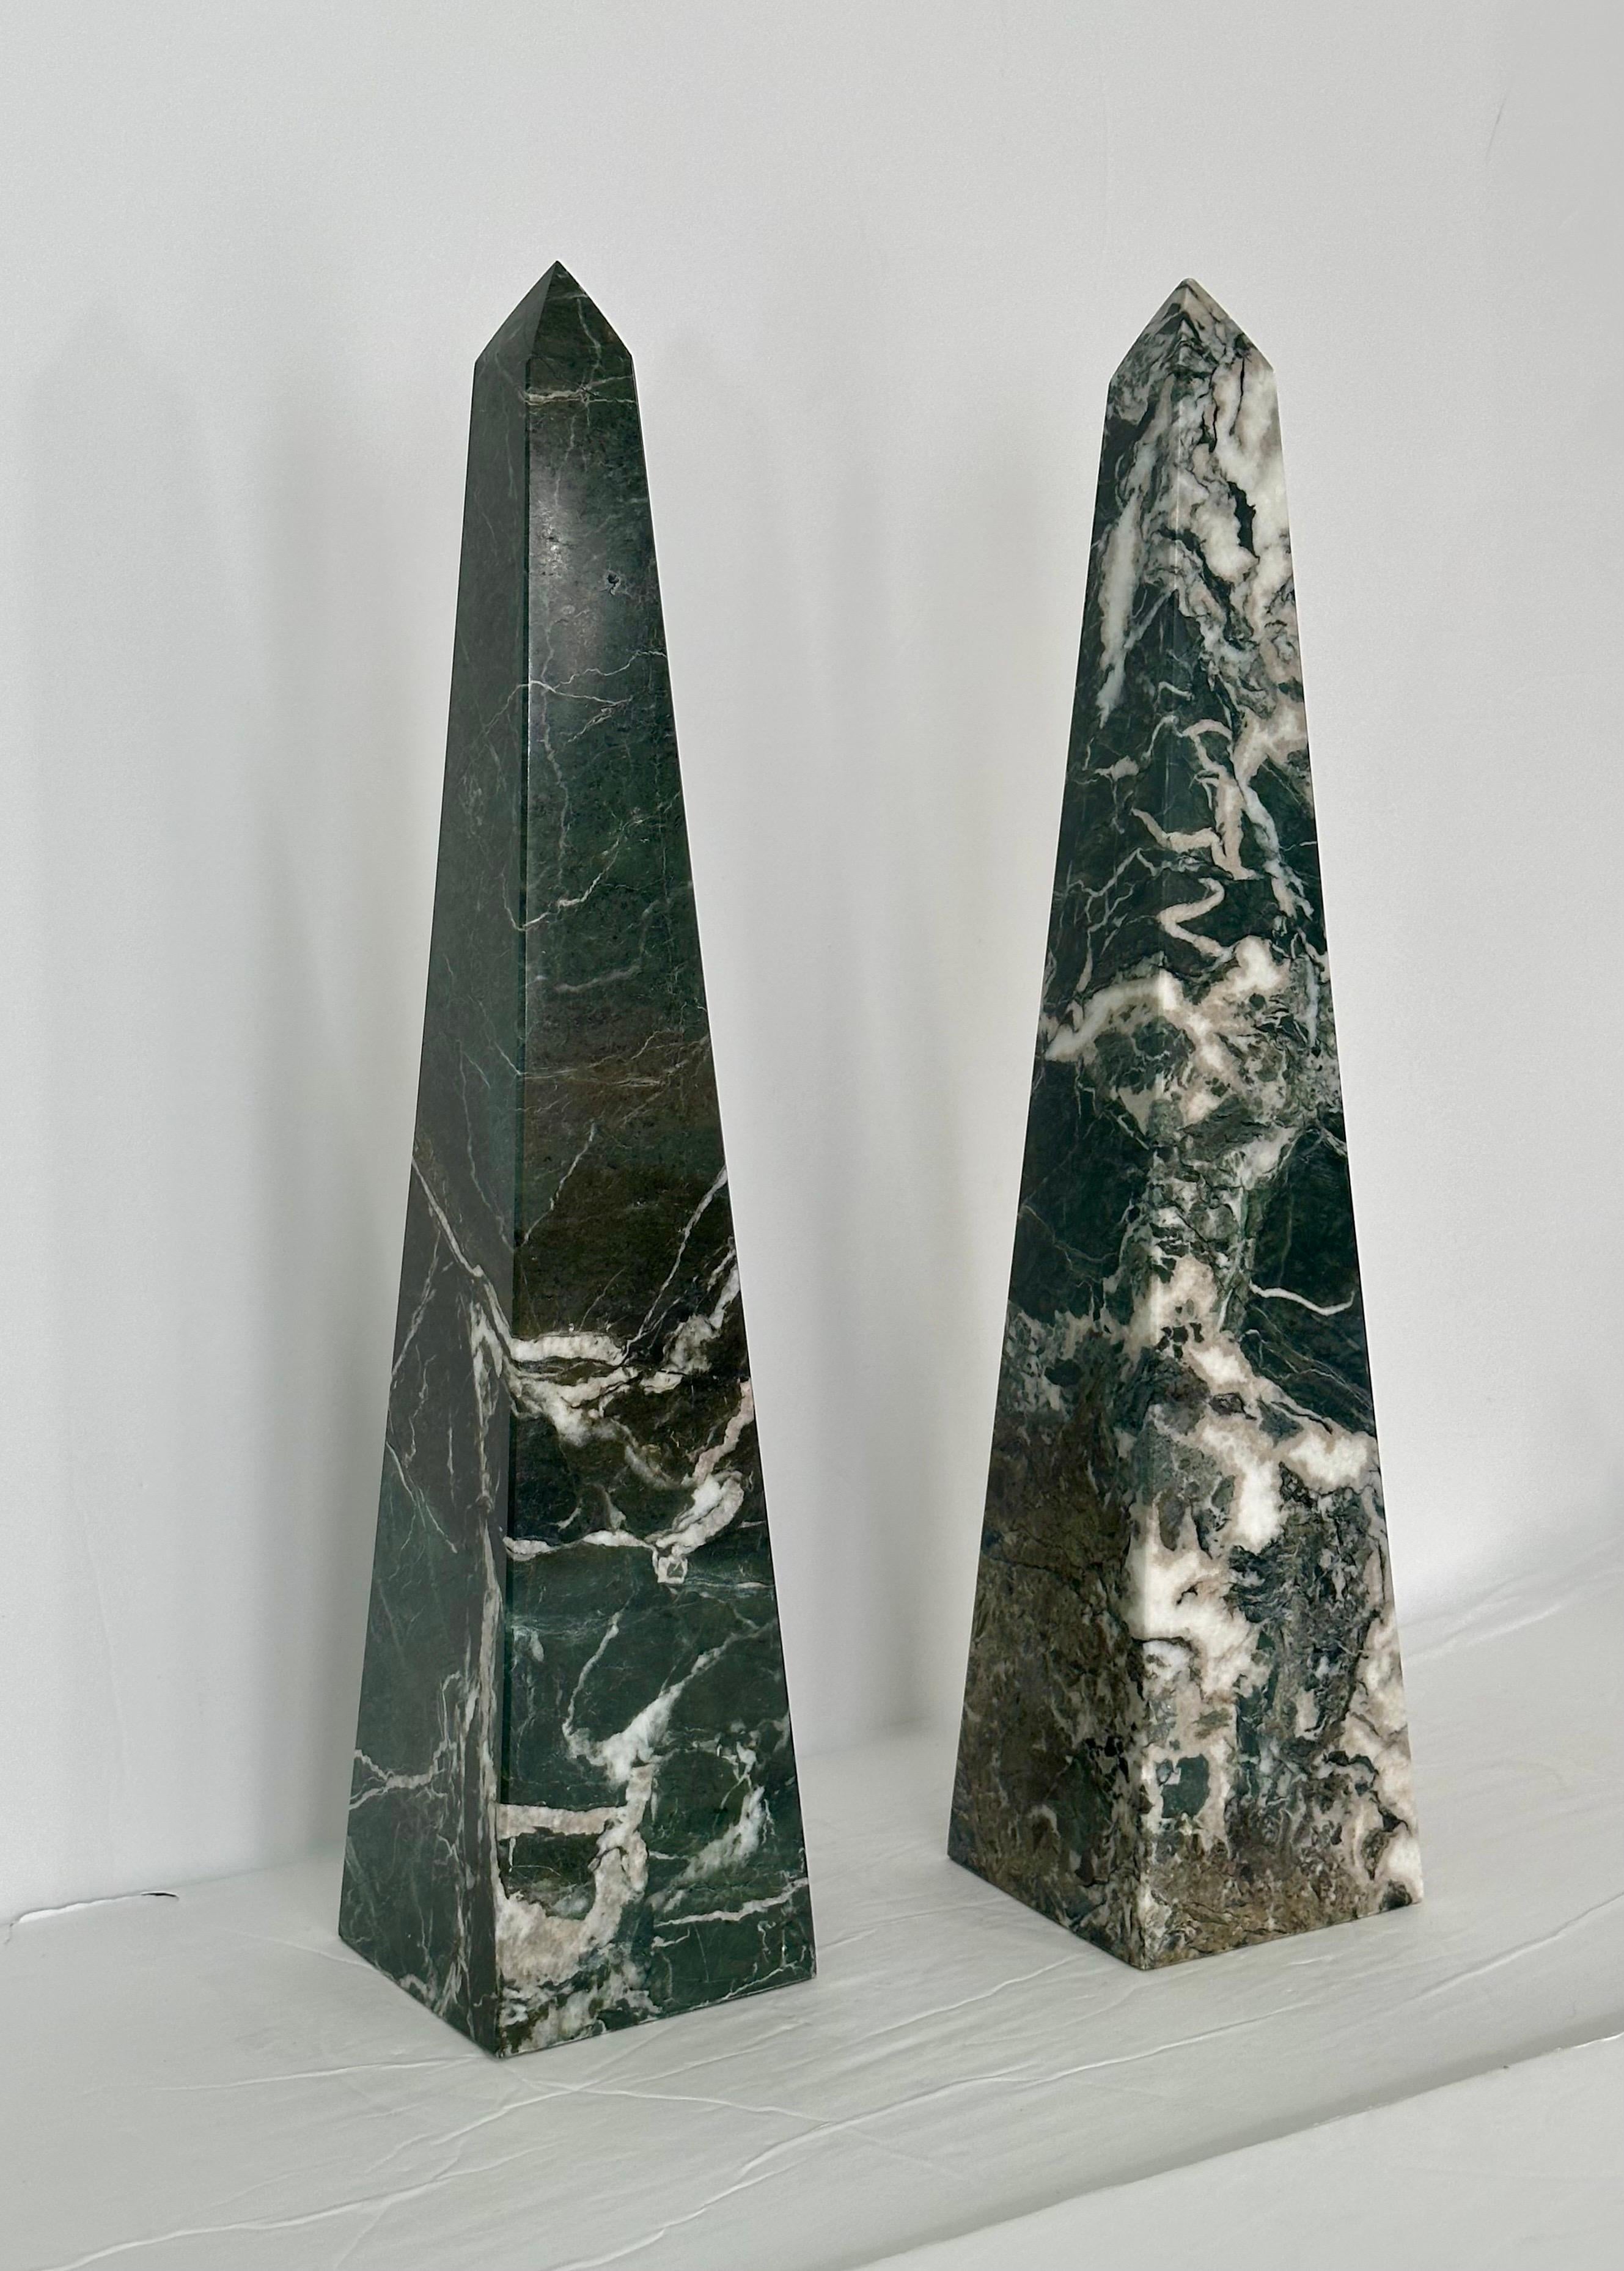 Wir freuen uns sehr, ein Paar schöne Steinobelisken aus den 1970er Jahren anbieten zu können.  Die aus feinem Marmor gefertigten Obelisken bestechen durch eine faszinierende Farbpalette mit Grün-, Weiß- und Grautönen.  Die lebhaften Farben werden